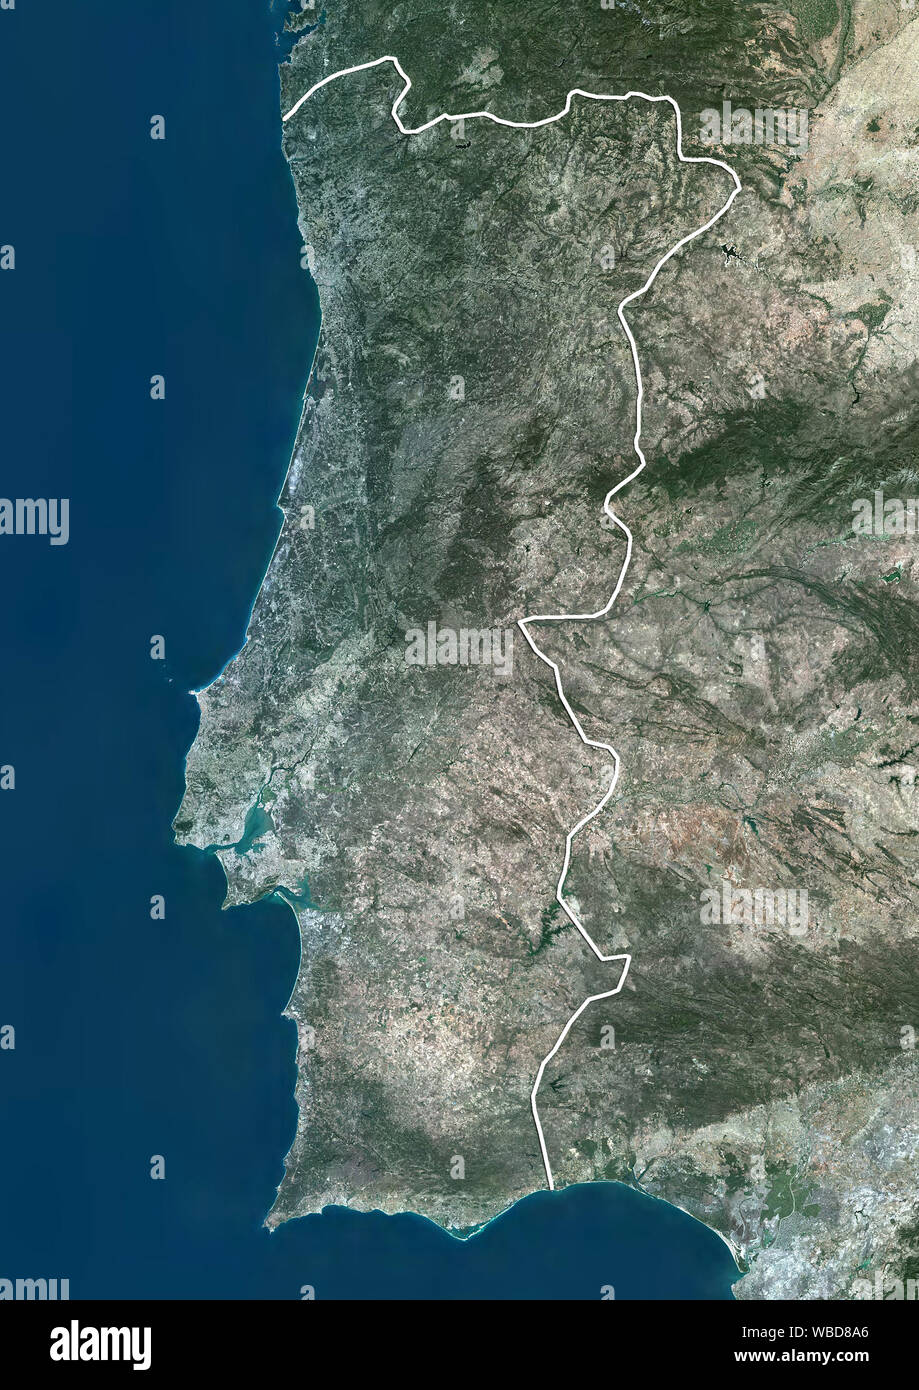 Farbe Satellitenbild von Portugal (mit administrativen Grenzen). Dieses Bild wurde aus Daten von Sentinel-2 Satelliten erfassten zusammengestellt. Stockfoto